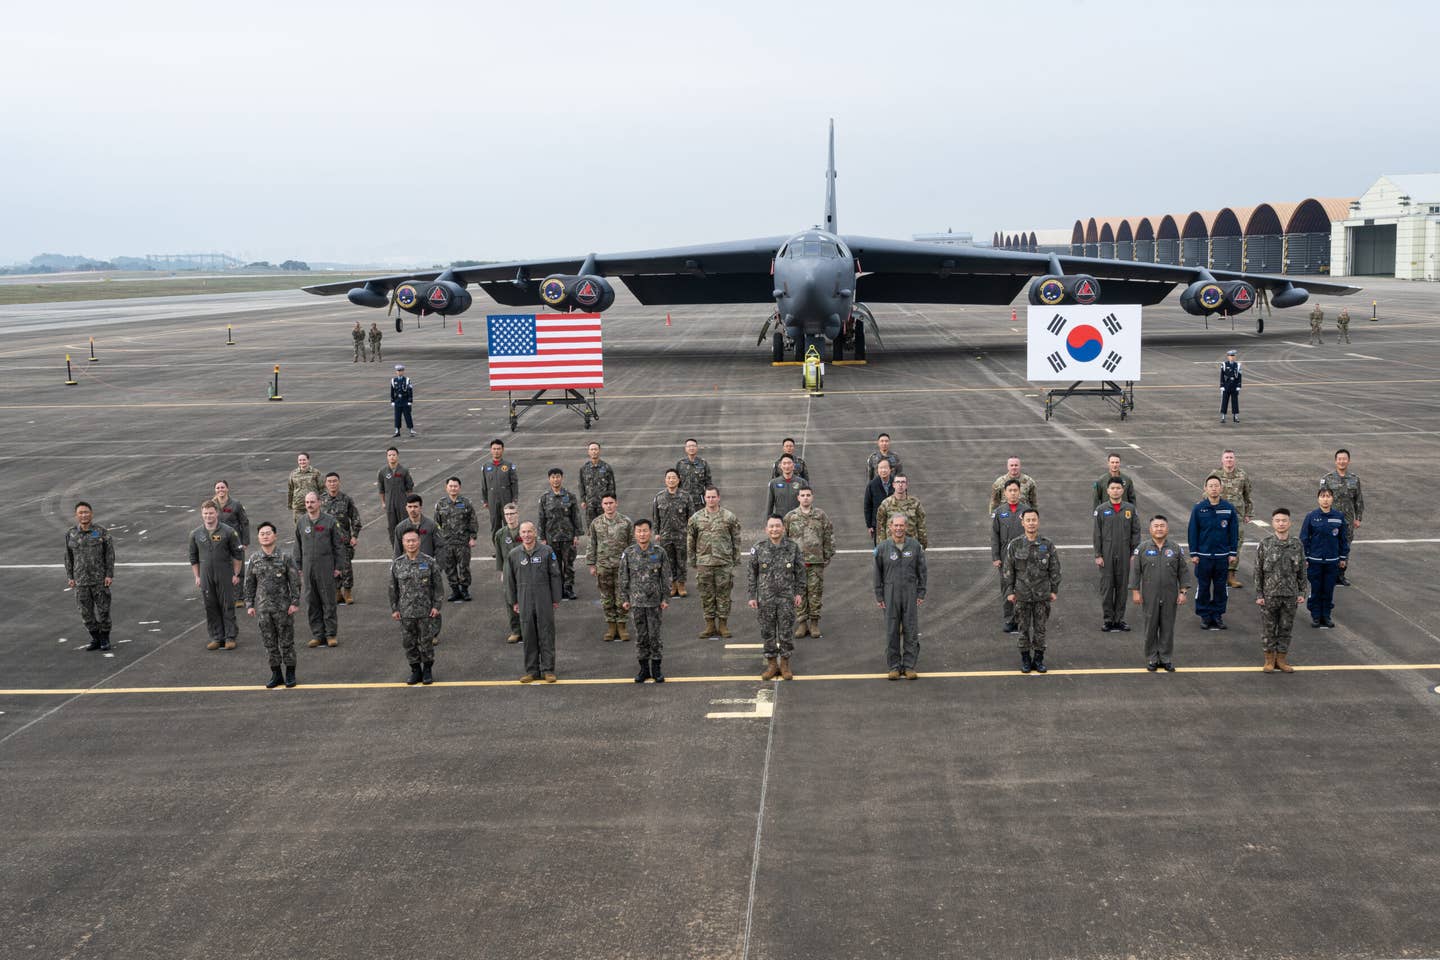 Příslušníci vojenského letectva USA a vzdušných sil Korejské republiky pózují na společné fotografii před B-52H Stratofortress z 96. bombardovací perutě na letecké základně Barksdale v Louisianě v Korejské republice, 19. října 2023. Americký B-52 byl nasazen na Korejský poloostrov, aby se zúčastnil mezinárodní výstavy letectví a obrany v Soulu v roce 2023, která je naplánována na 17. až 22. října na oslavu Korejské republiky a 70. výročí americké aliance.  Podpora leteckých dnů a dalších regionálních akcí umožňuje USA demonstrovat svůj závazek ke stabilitě a bezpečnosti indicko-pacifického regionu, podporovat standardizaci a interoperabilitu vybavení a předvádět schopnosti rozhodující pro úspěch vojenských operací.  (foto amerického letectva od letce 1. třídy Nicole Ledbetter)